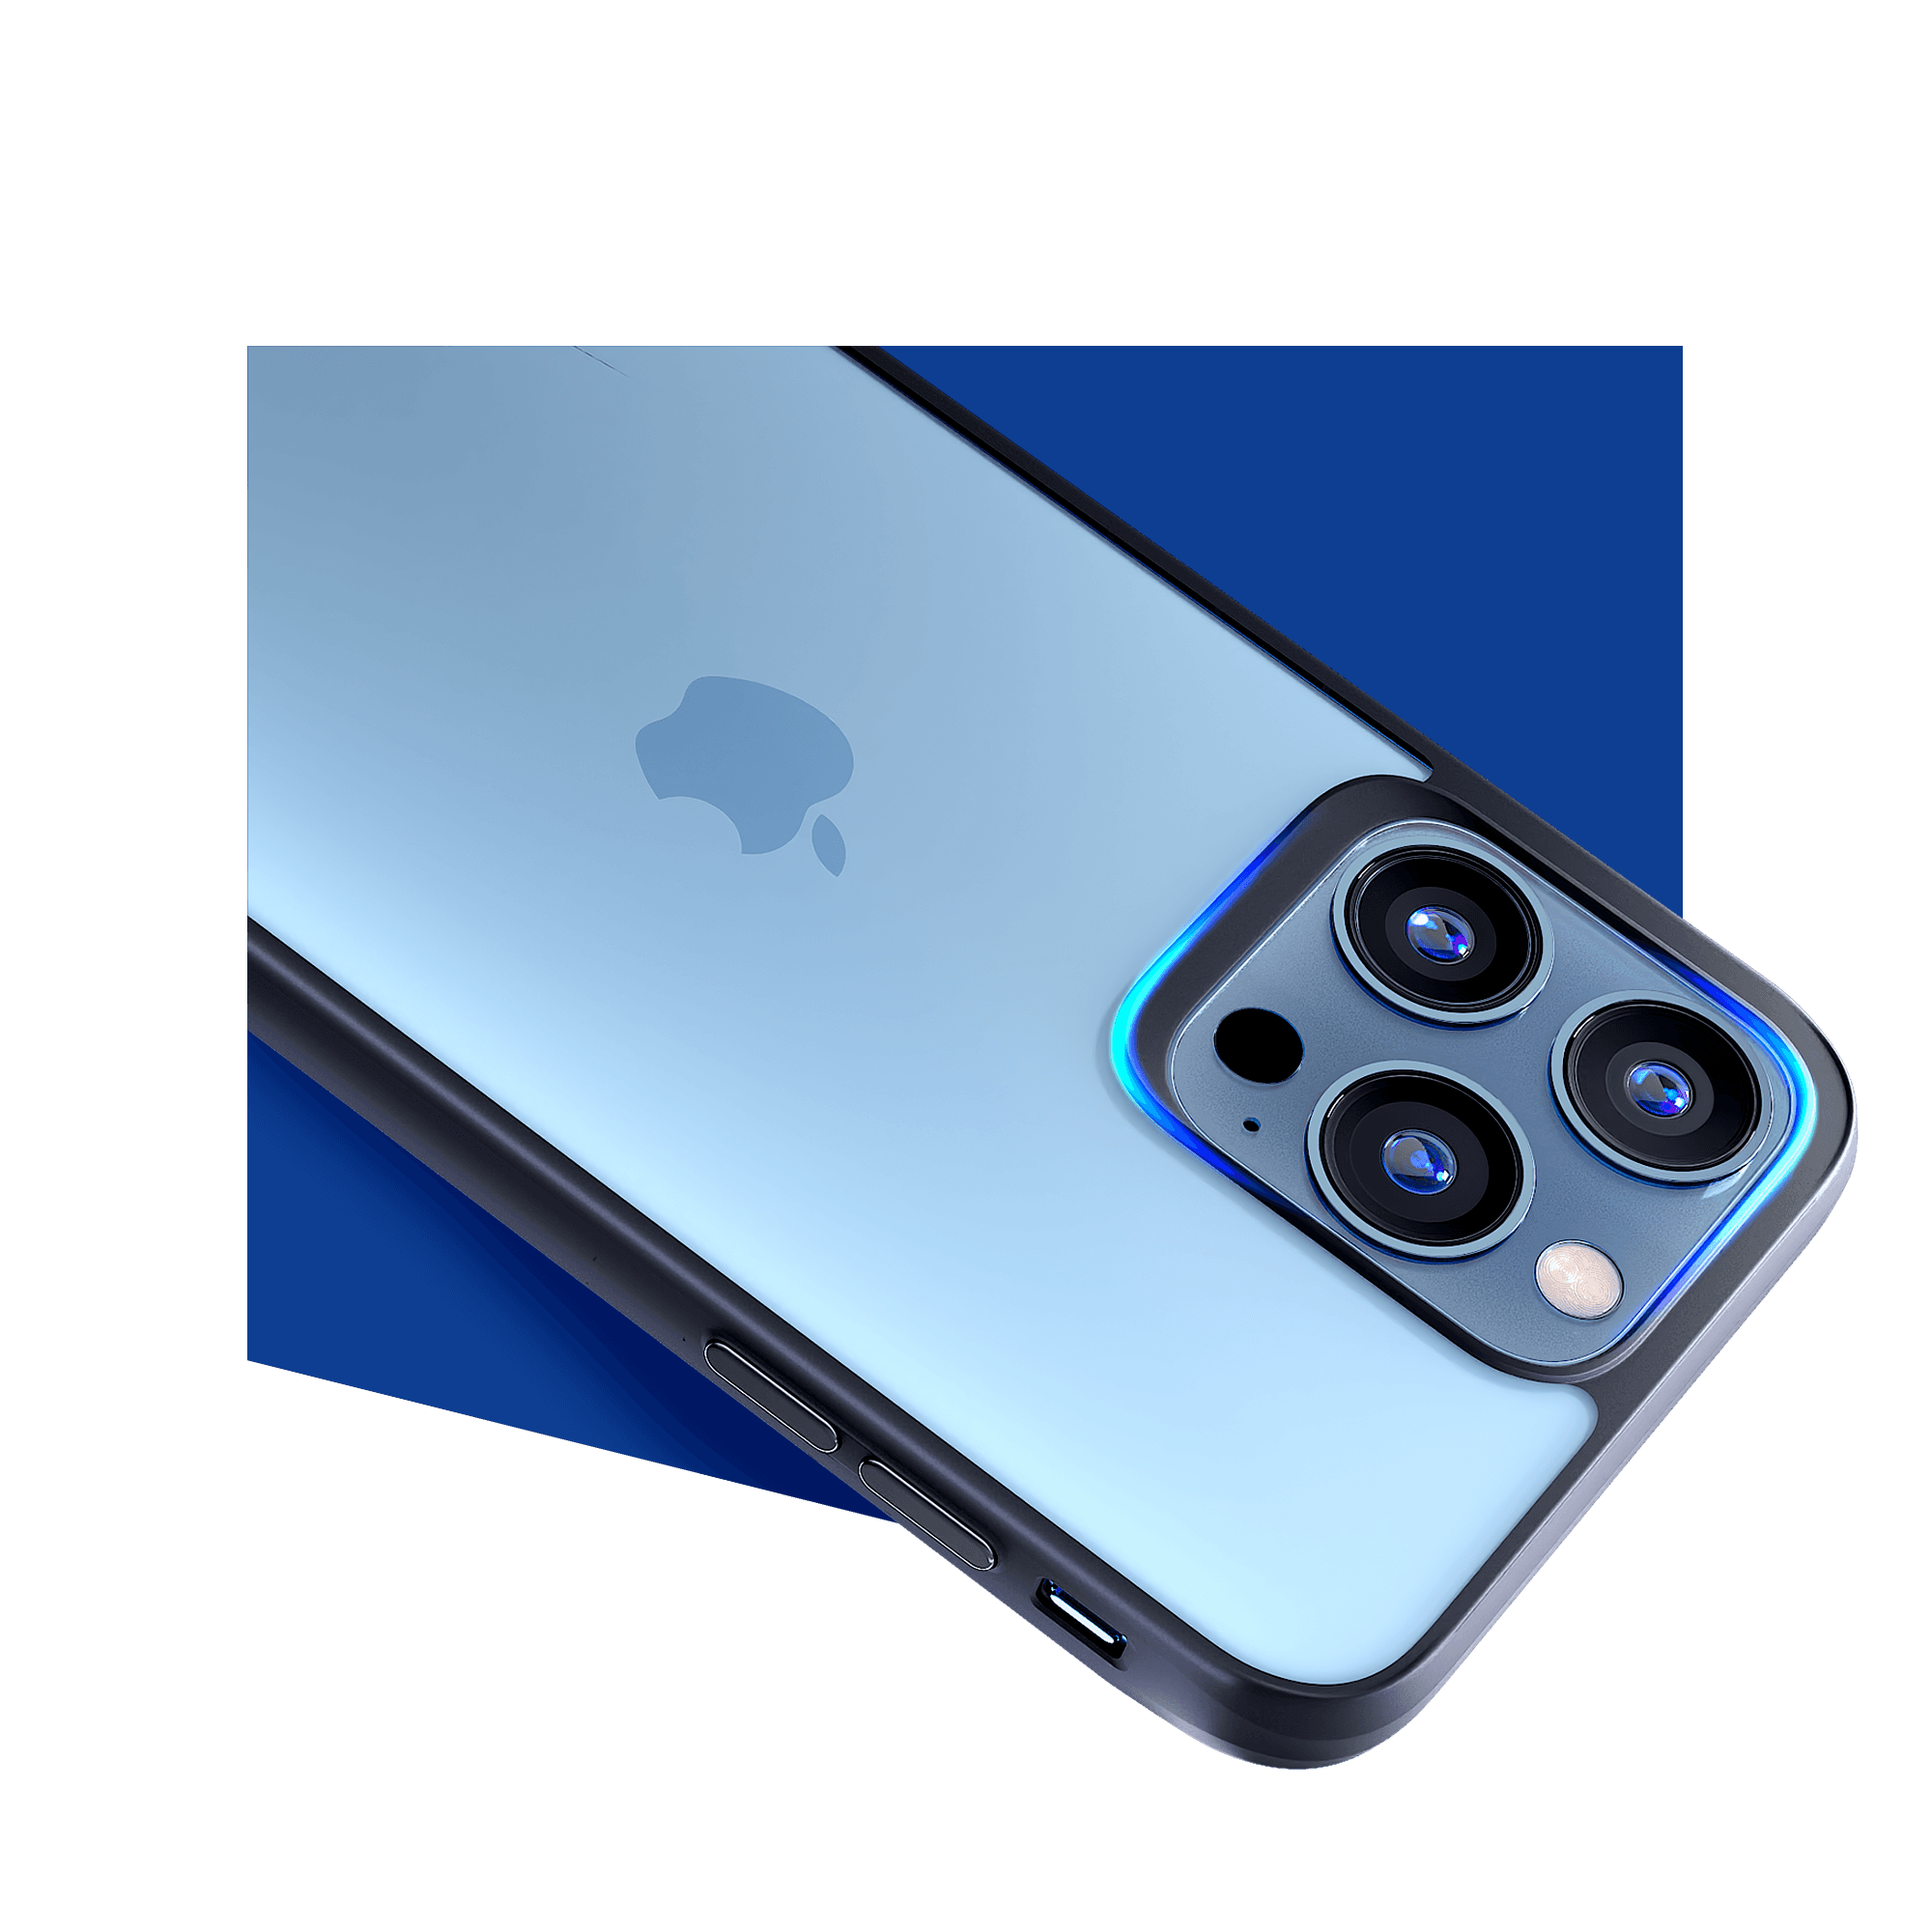 3MK obal iPhone 7 - 8 - SE 2020 - 2022 Satin Armor Case+ transparentní s černým rámečkem